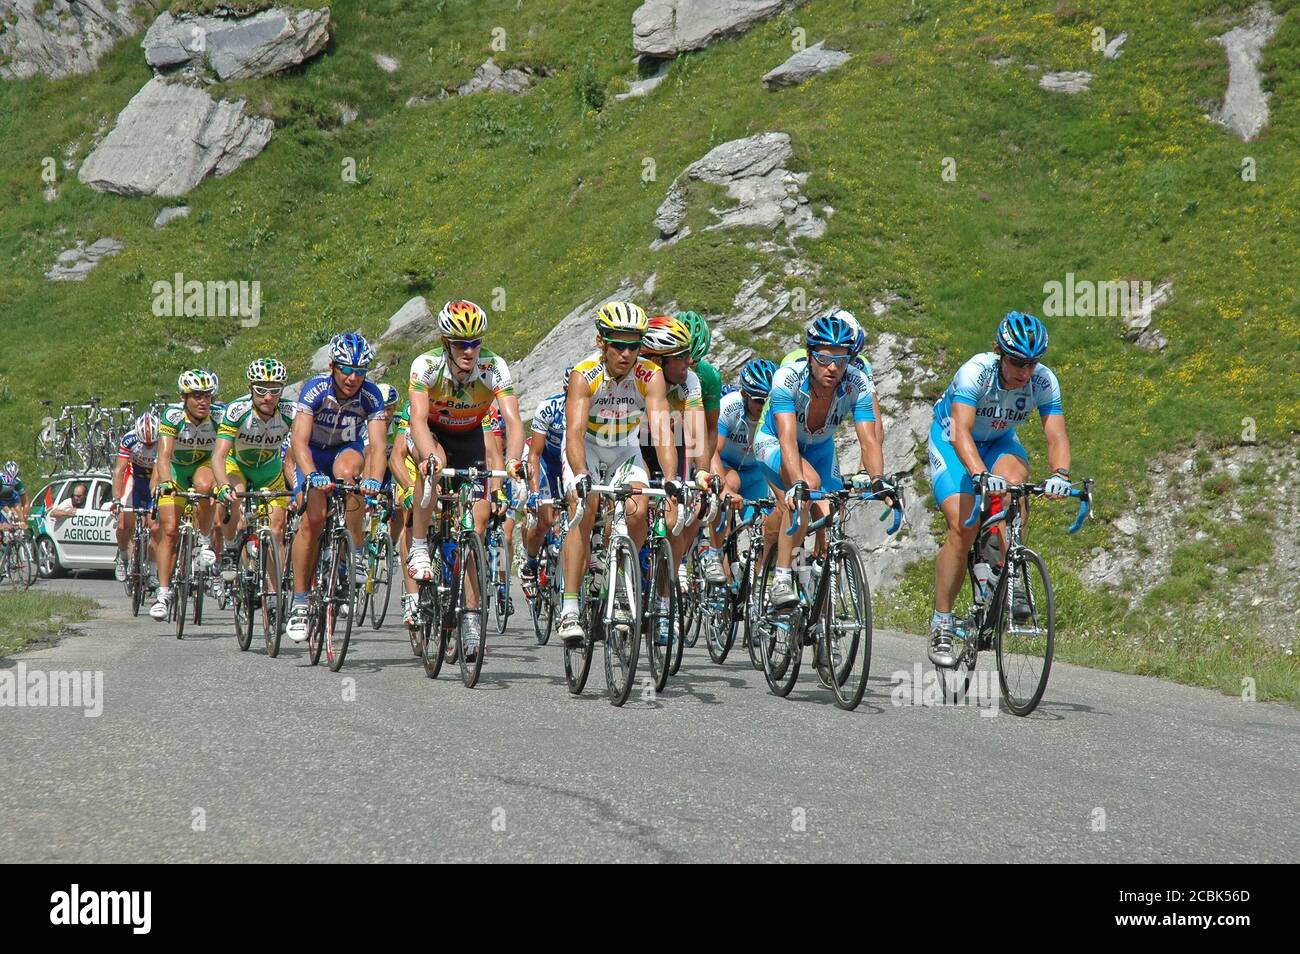 Les cavaliers se rendent sur la pente du Cormet de Roselend dans les Alpes françaises lors de la phase de montagne 2005 Tour de France (étape 10). Banque D'Images